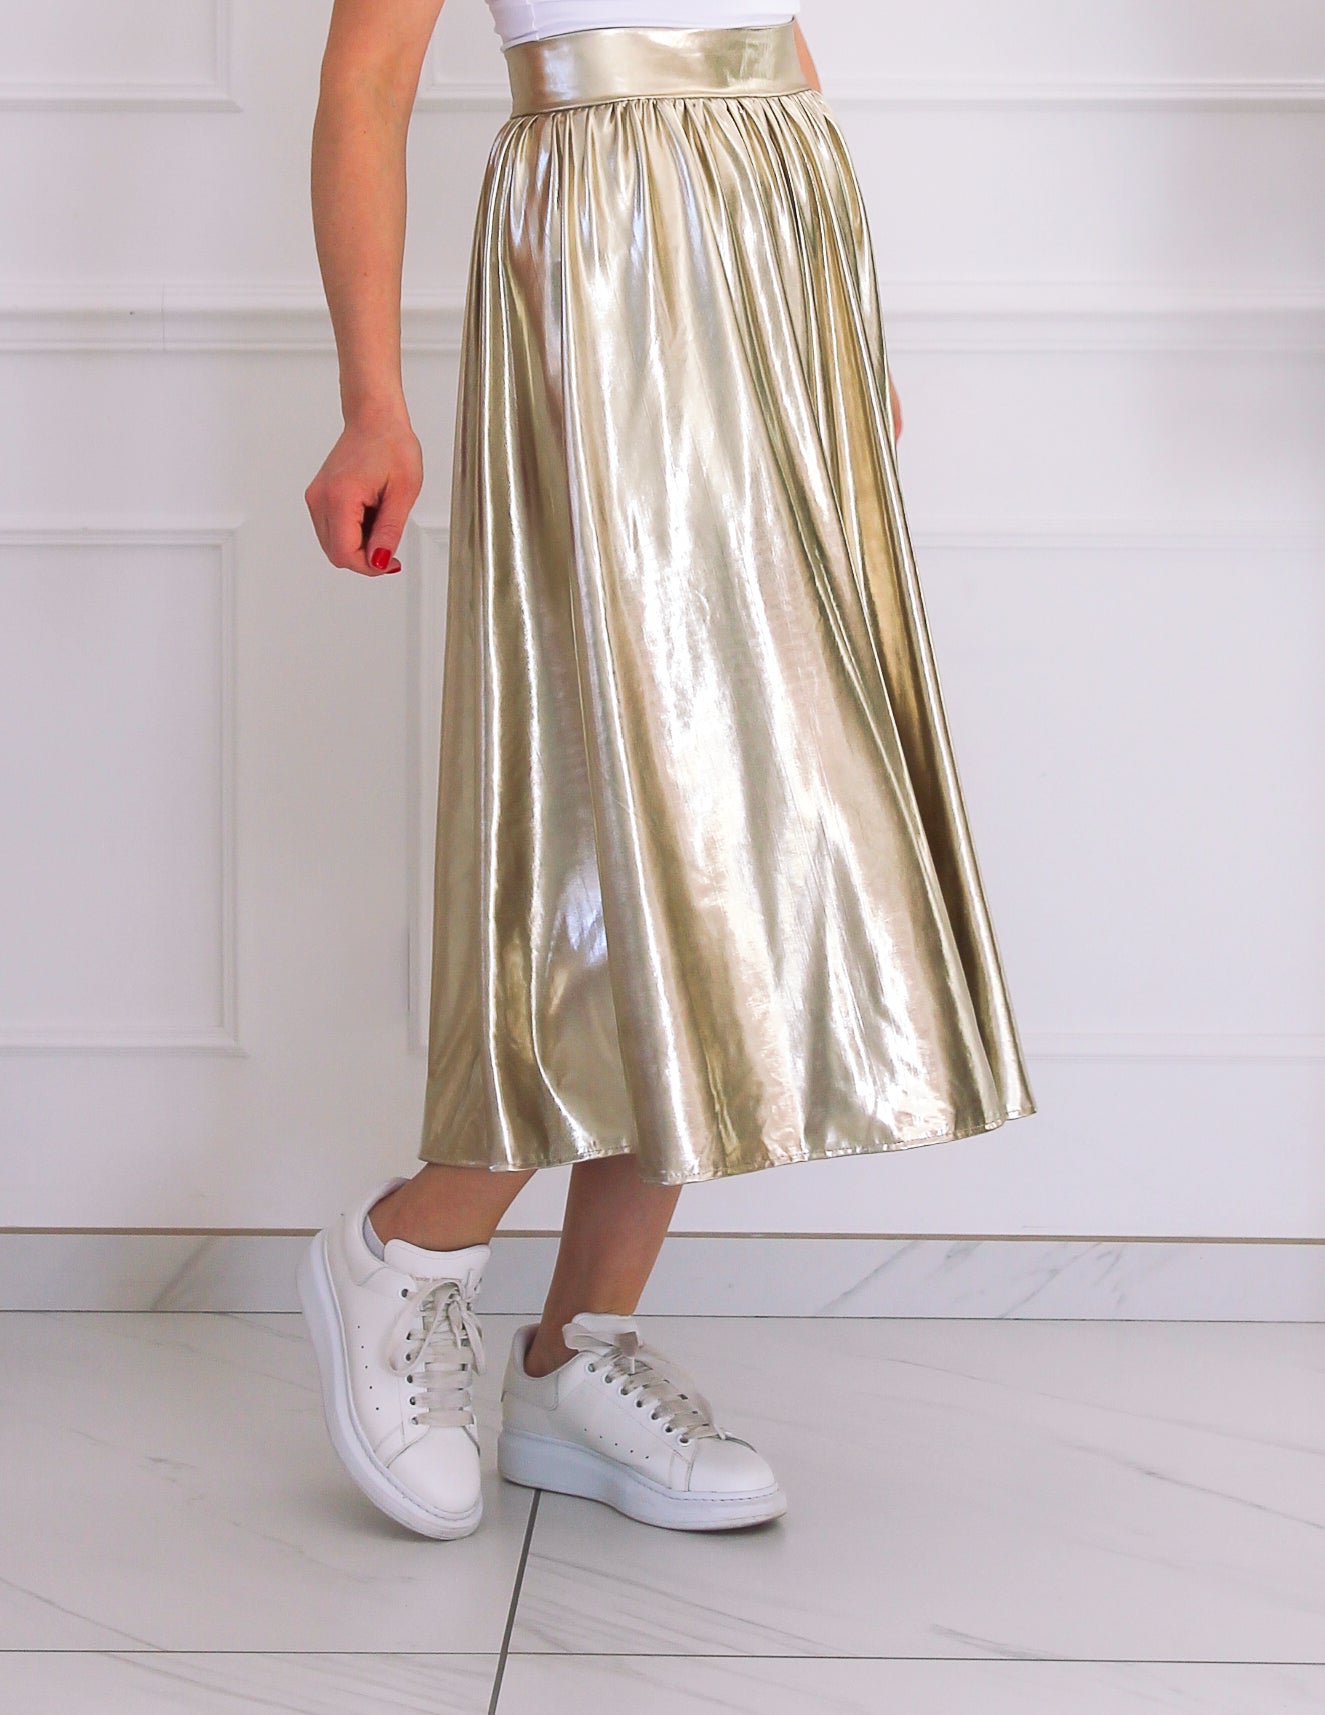 Long golden skirt